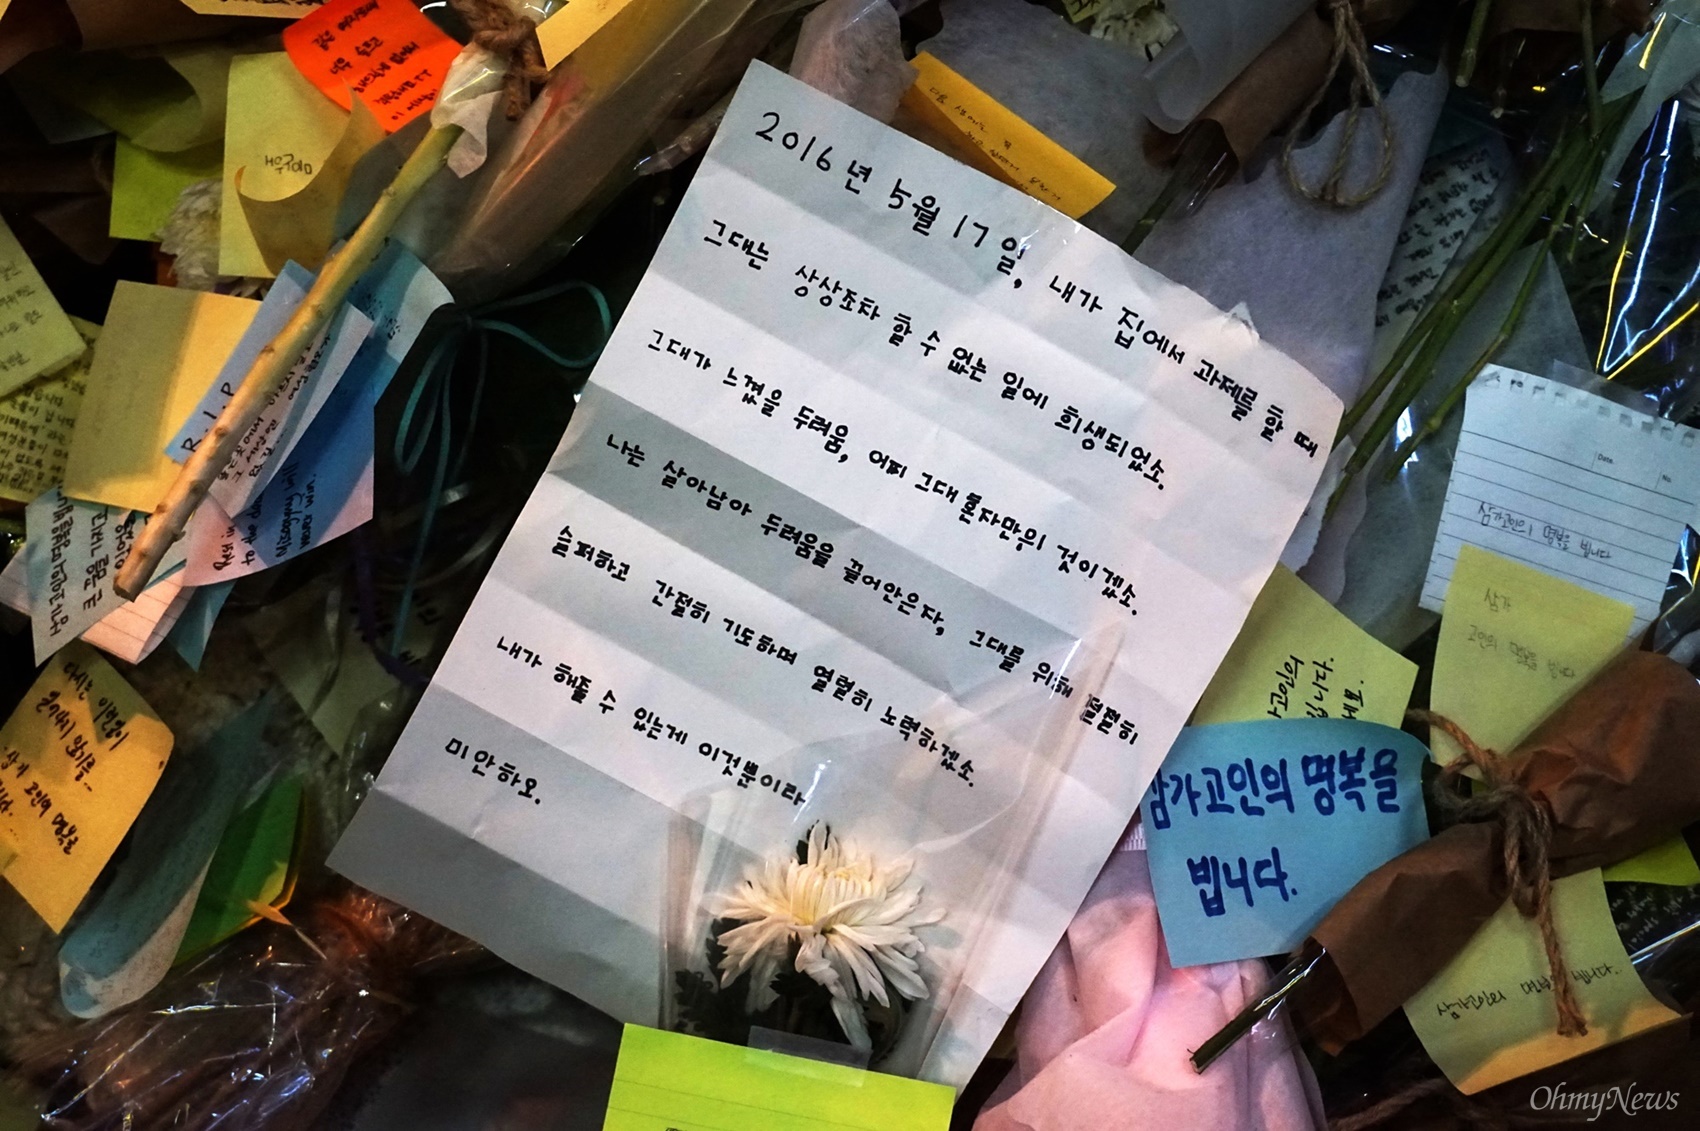  22일은 강남역 여성 살인사건 피해 여성을 애도하기 위해 강남역 10번 출구에 마련한 추모 장소를 볼 수 있는 마지막 날이었다. 